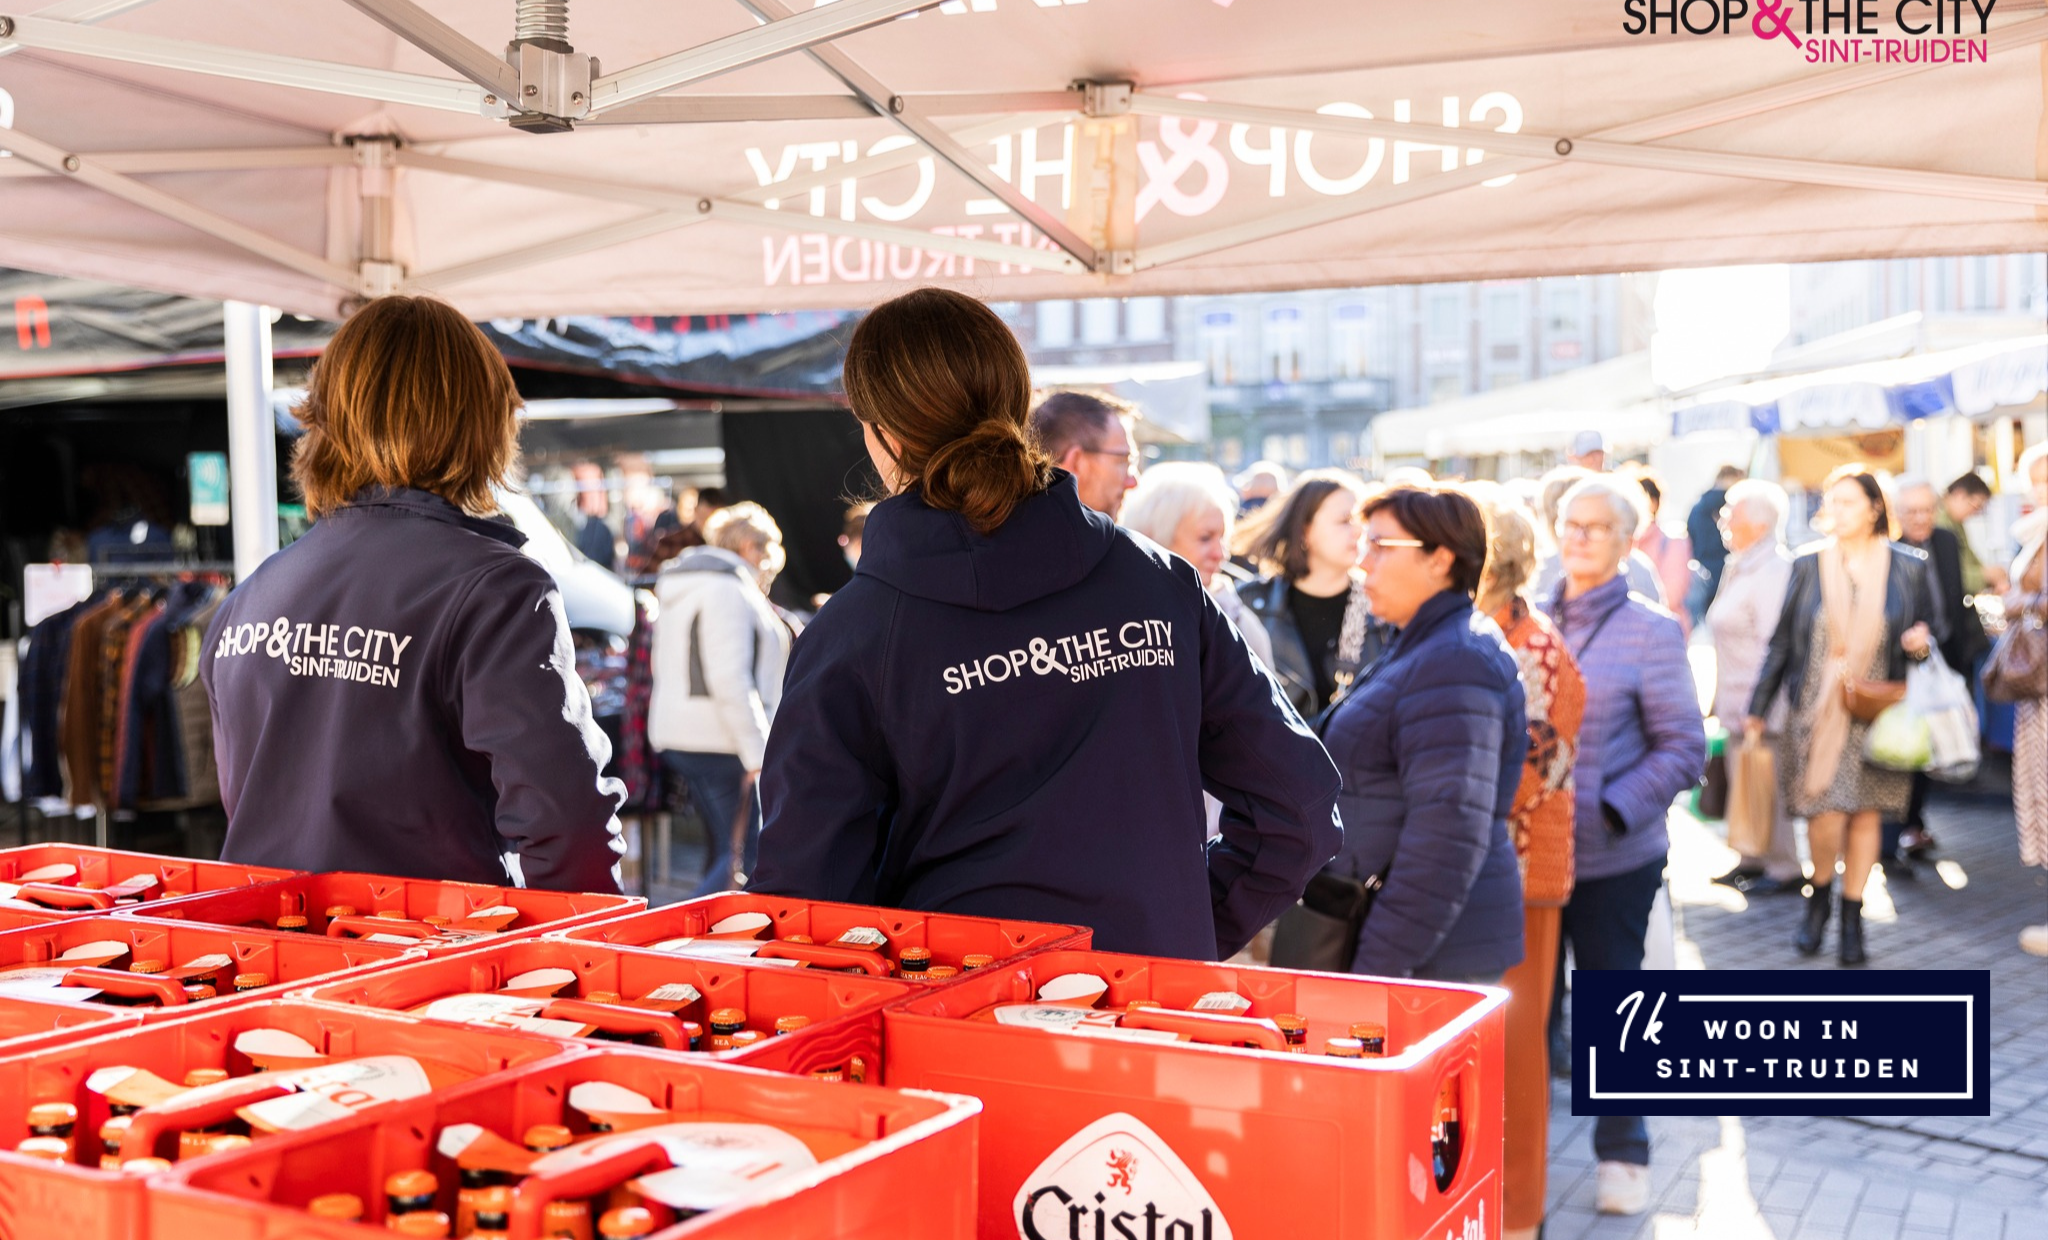 Zaterdag 14 oktober zijn er maar liefst 500 bakken Cristal bier te winnen op de wekelijkse markt in Sint-Truiden.